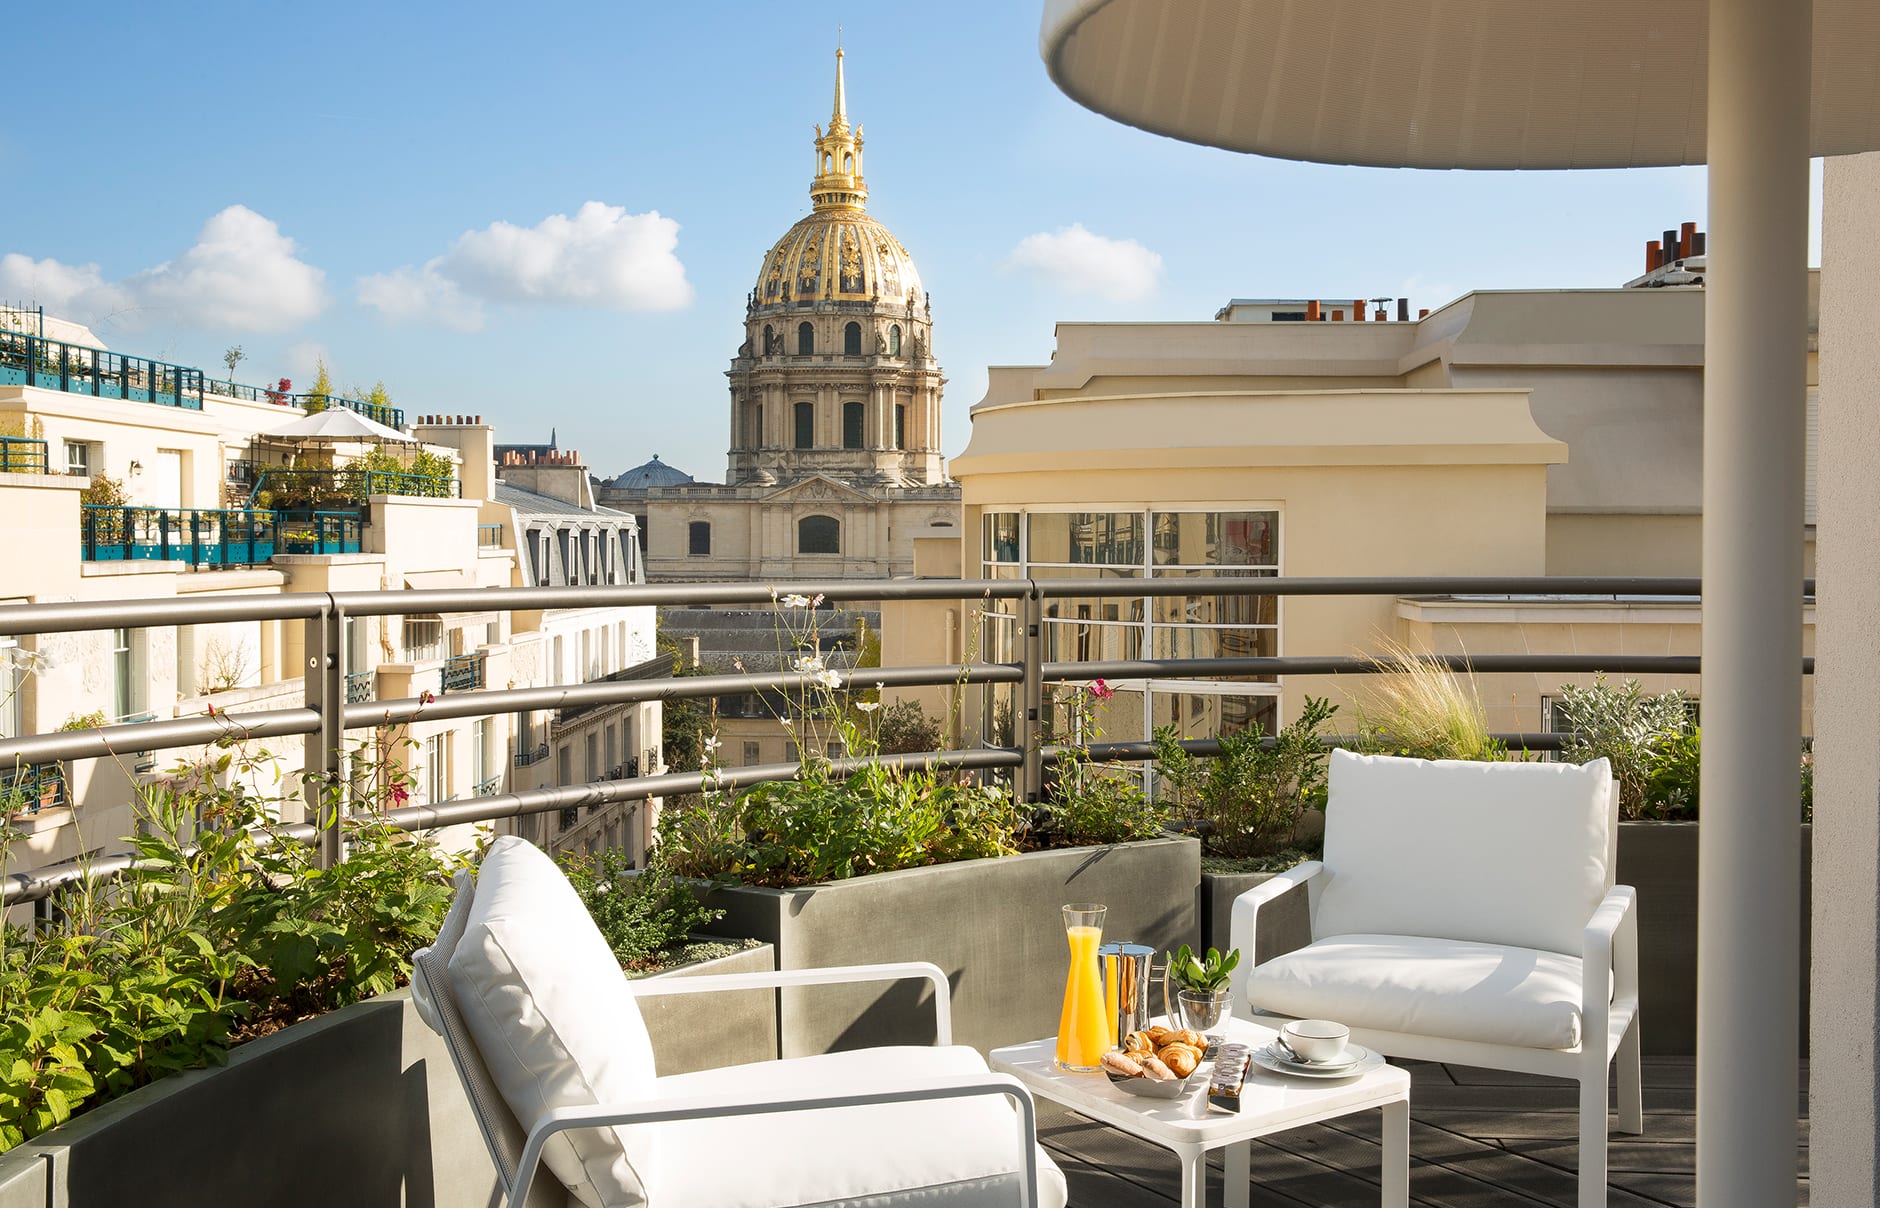 Le Cinq Codet, Paris, France. Hotel Review by TravelPlusStyle. Photo © Le Cinq Codet